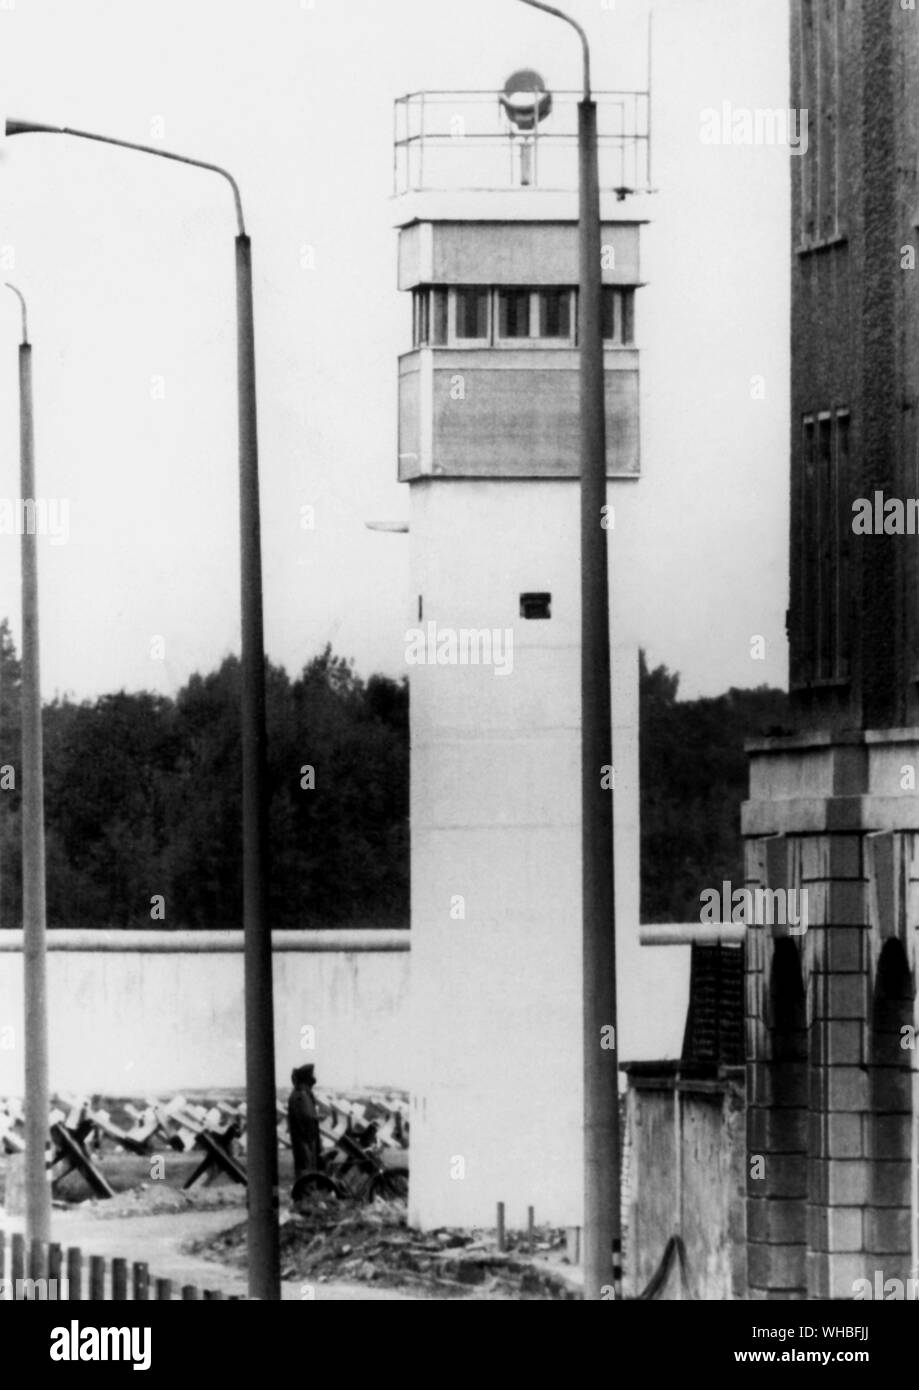 Verspiegeltes Glas guardtower an der Ostdeutschen Grenze in der Nähe von Potsdamer Platz zum Wächter von von innen schützen, und potenzielle entgeht Anschlag beim Turm ist leer, Berlin, Ost Deutschland. 13. Oktober 1981 Stockfoto